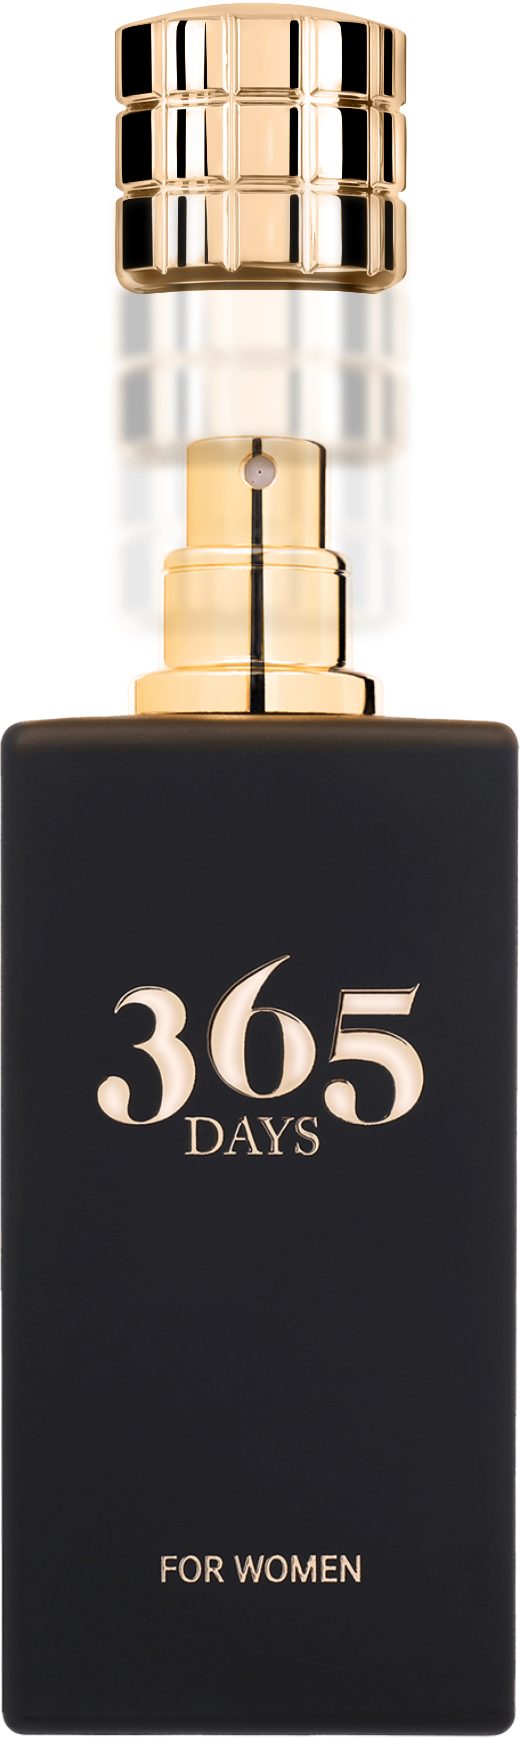 neness Eau de Parfum 365Days Parfüm Damen - mit Pheromonen versetzt